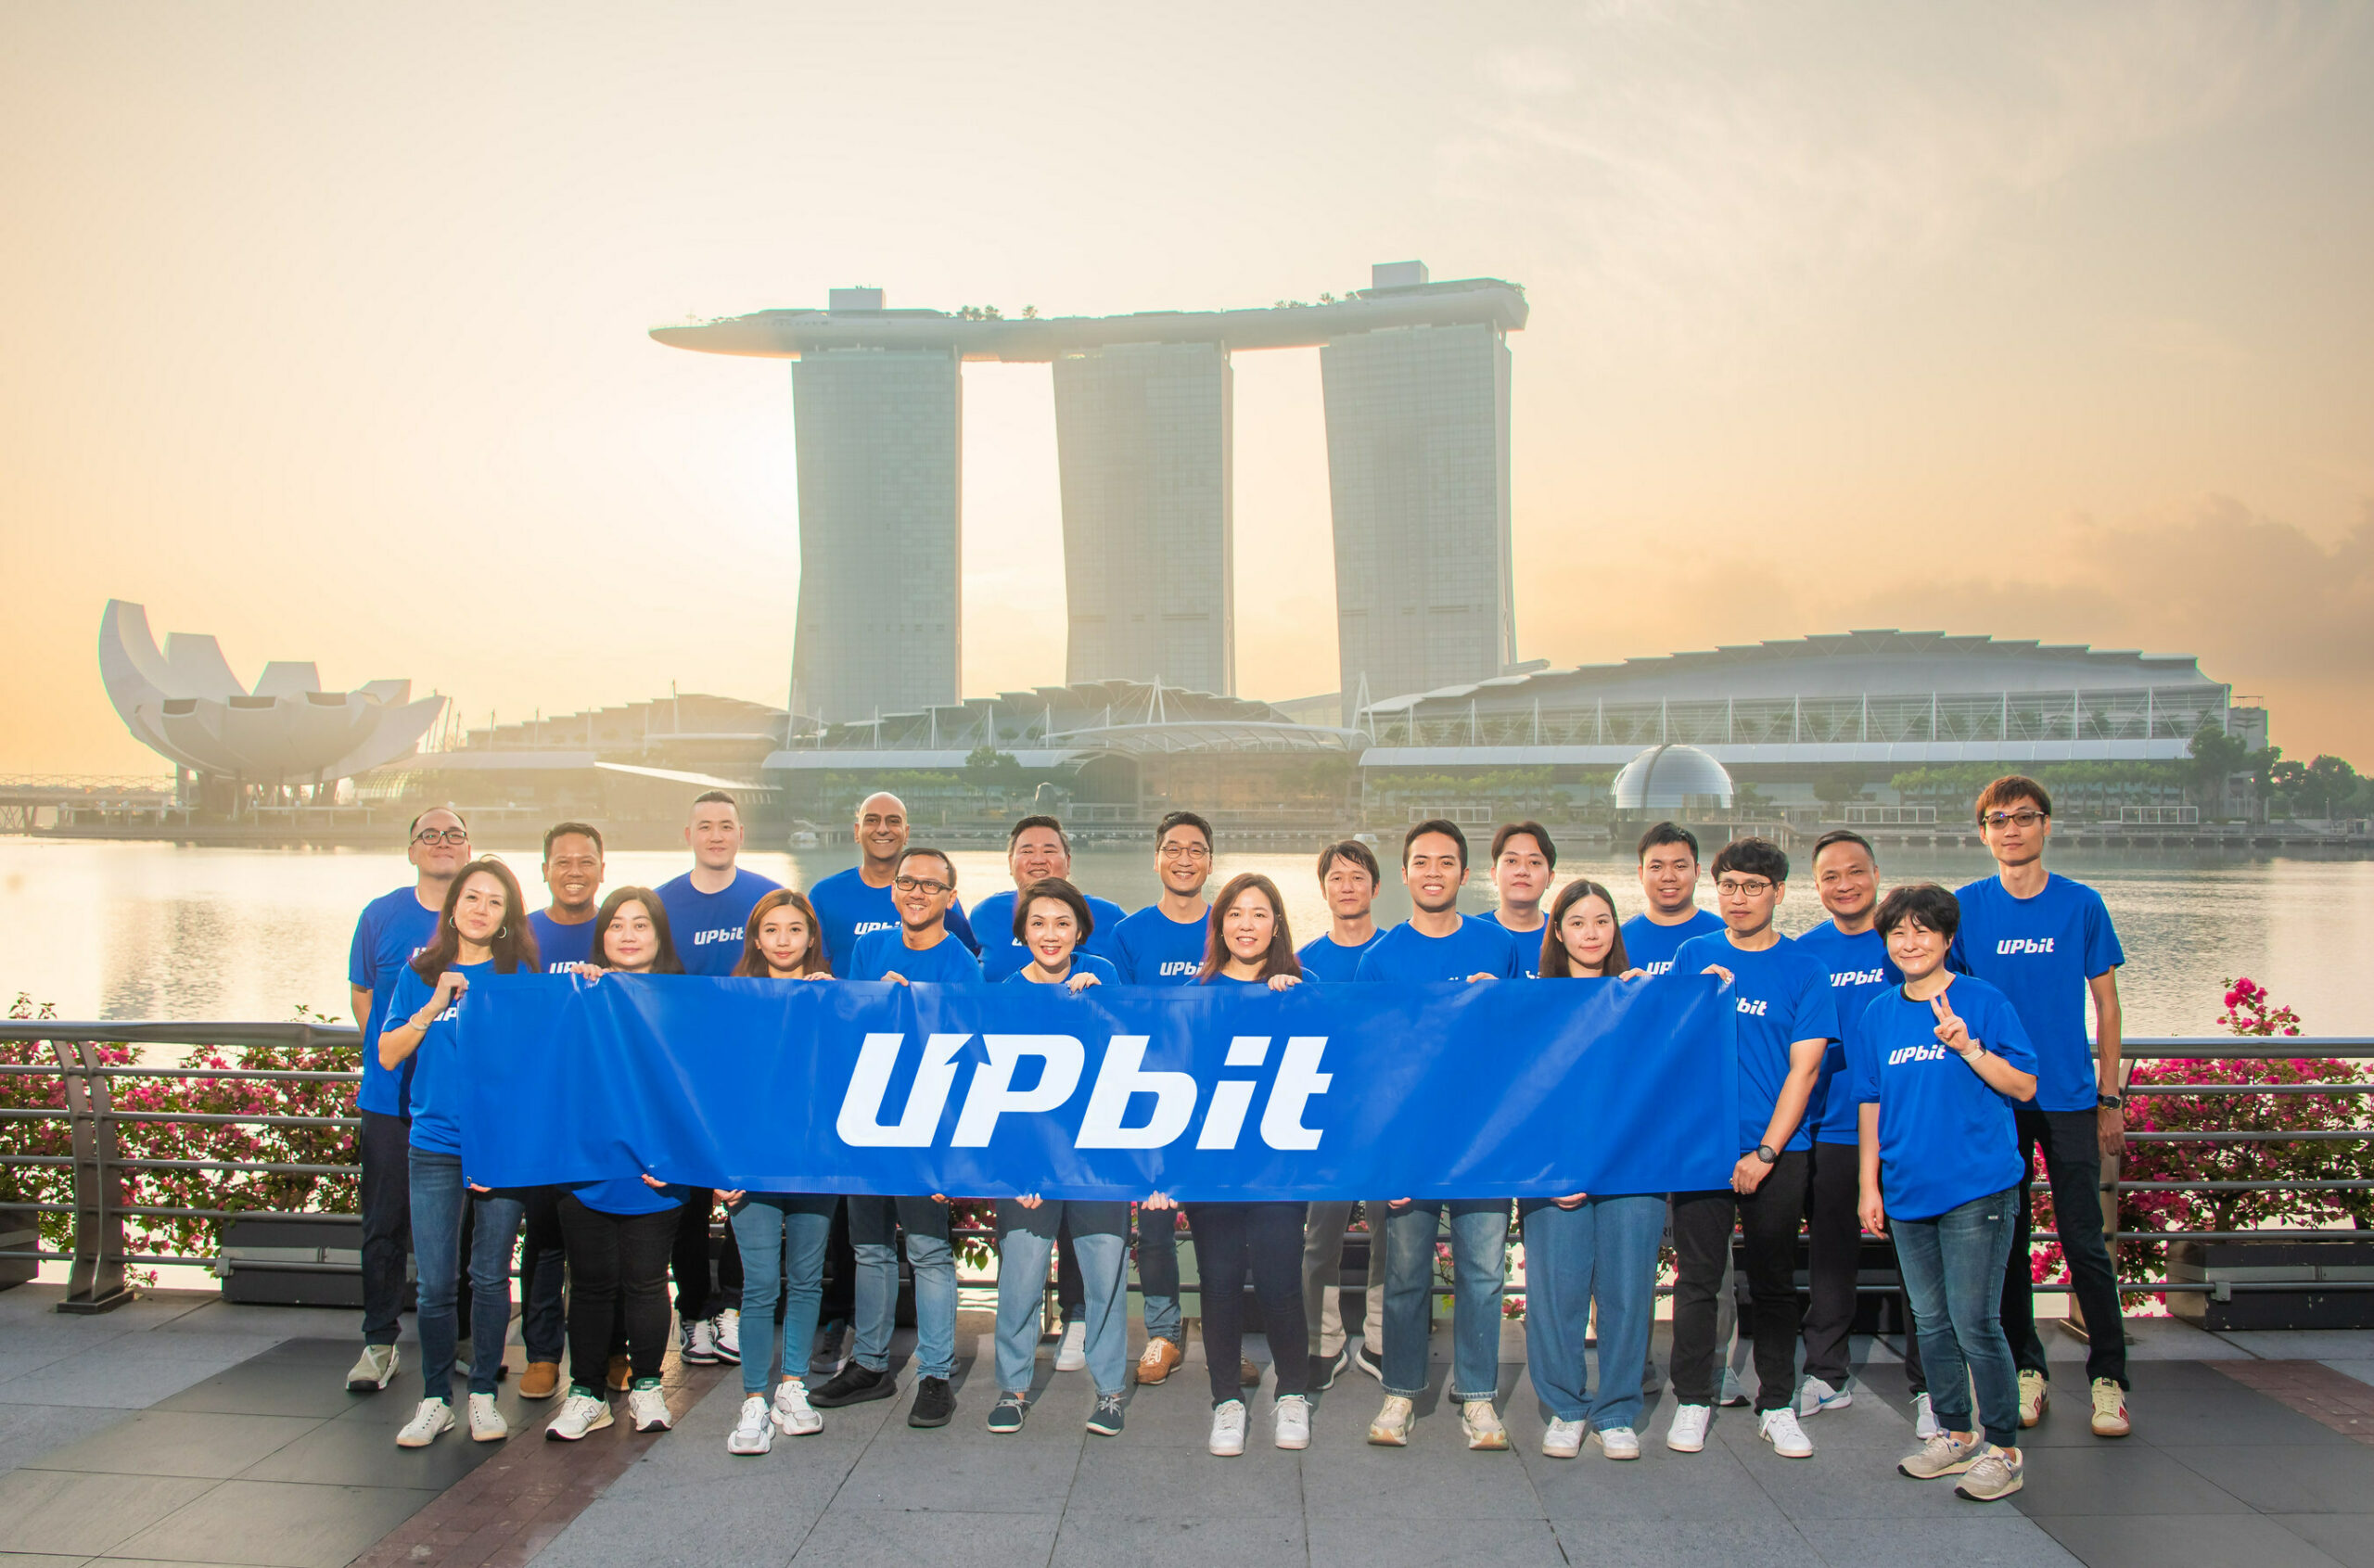 Sàn giao dịch Upbit của Hàn Quốc nhận được giấy phép ban đầu từ Singapore